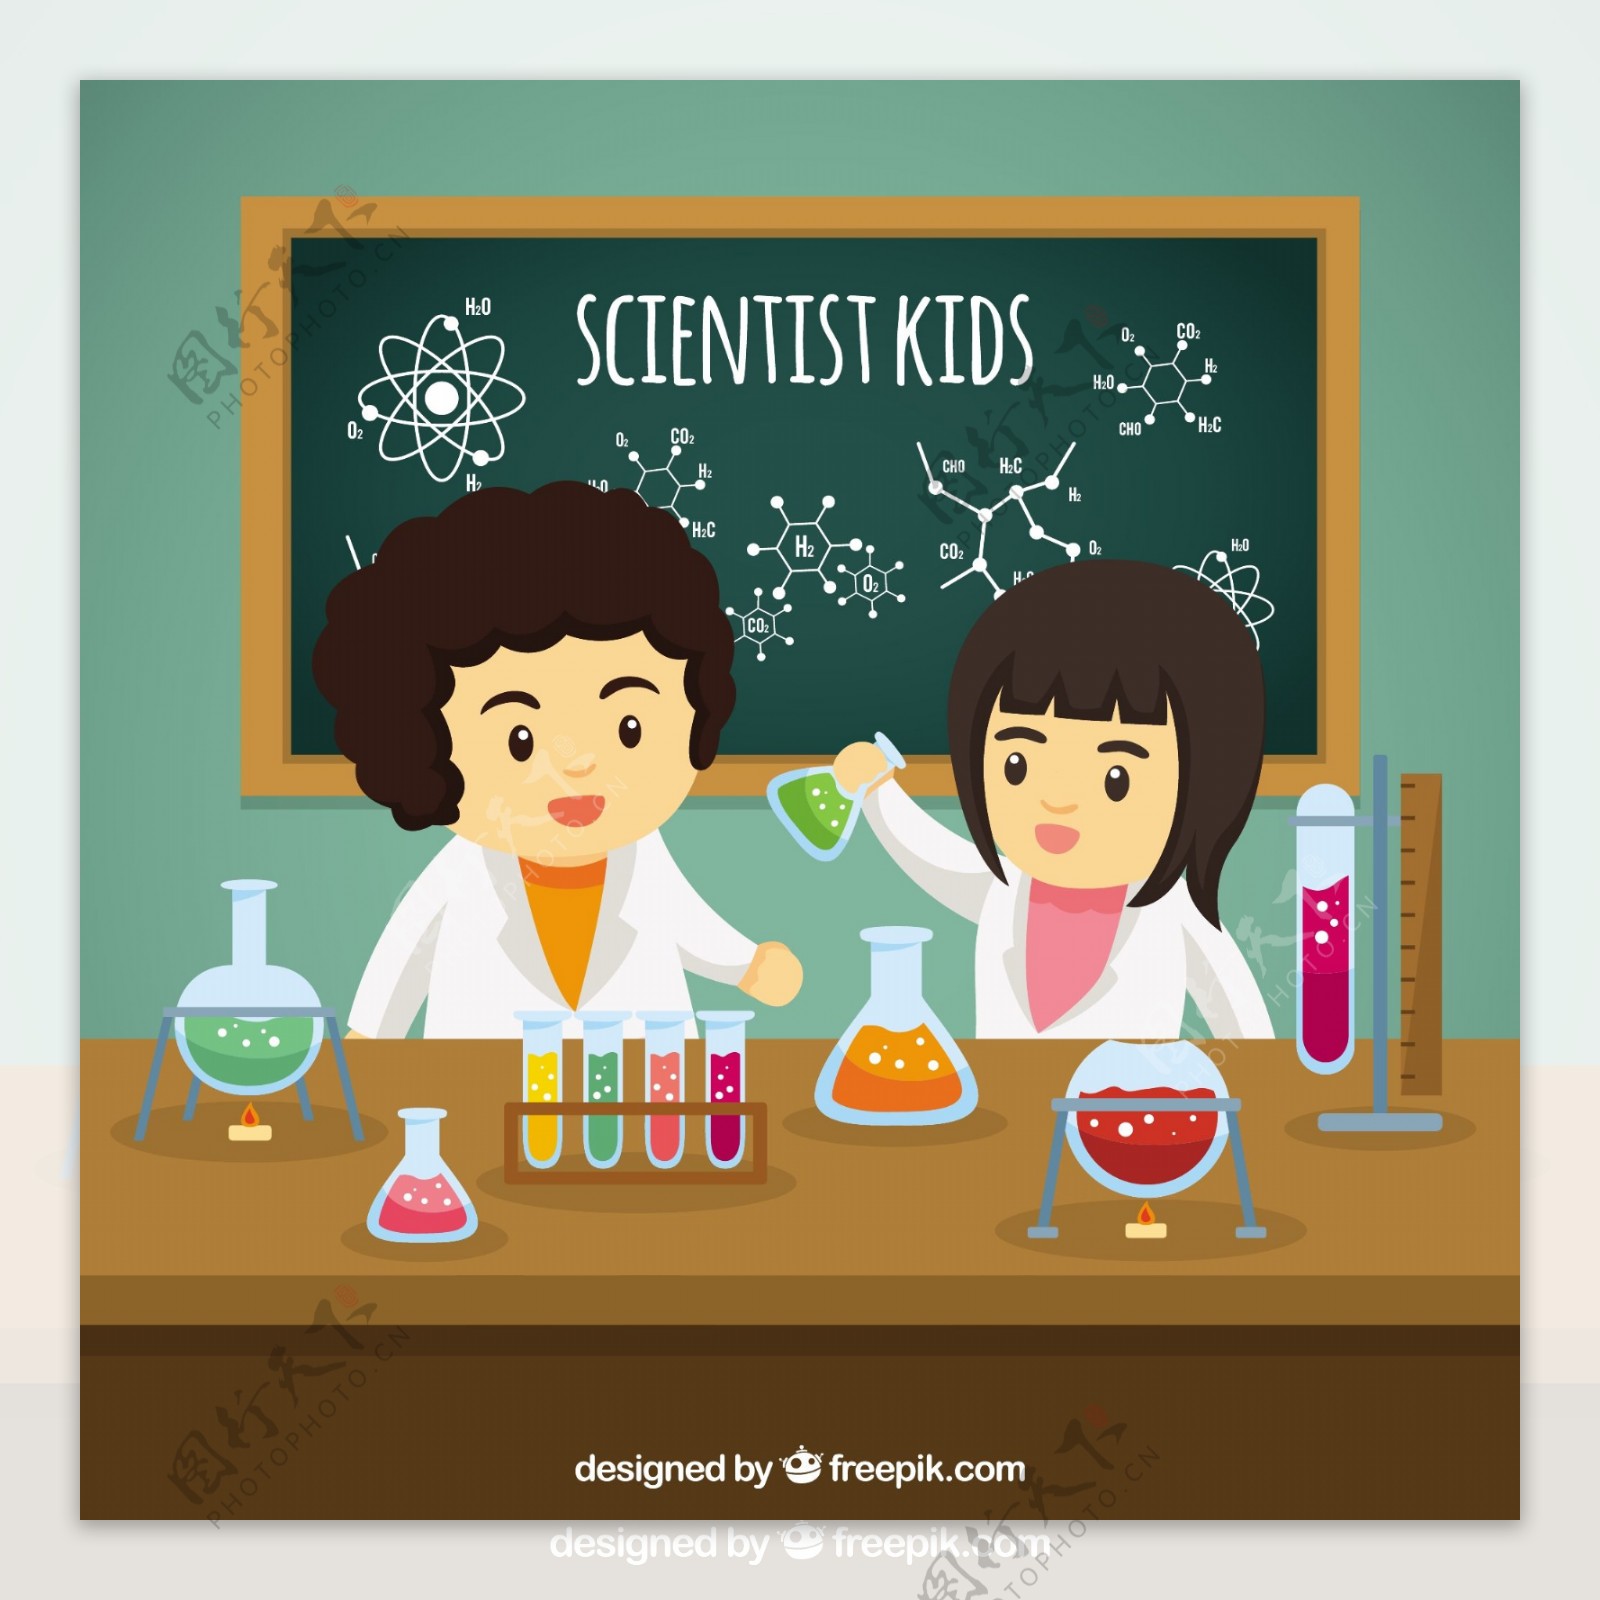 科学家们在实验室里实验的孩子